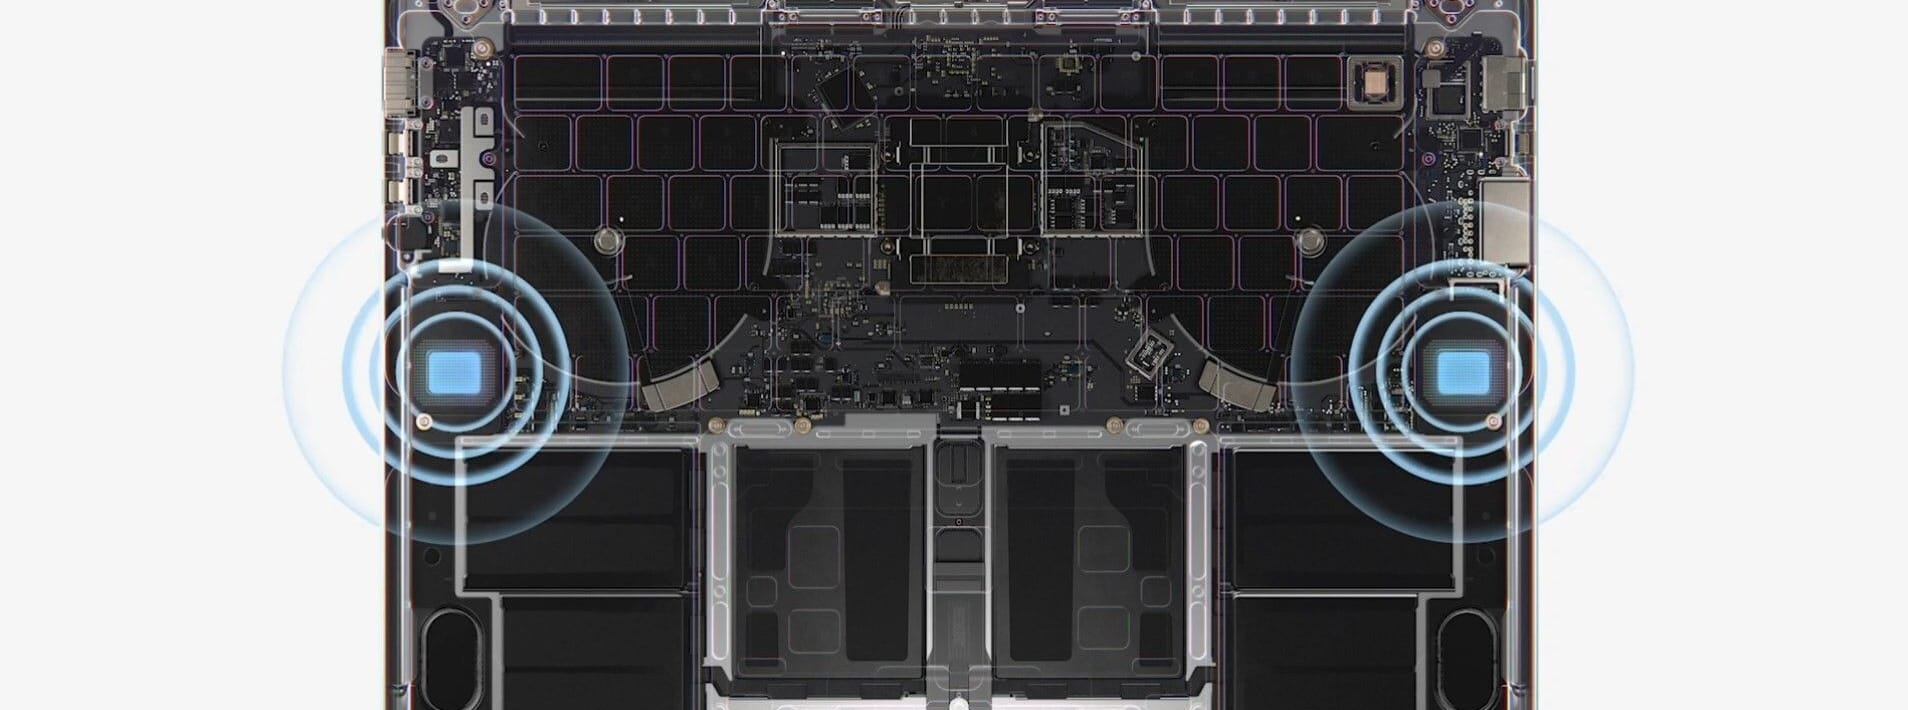 Für einen klaren Sound sind sechs Lautsprecher im MacBook Pro verbaut. Sie unterstützen auch Spatial Audio für 3D-Klang.